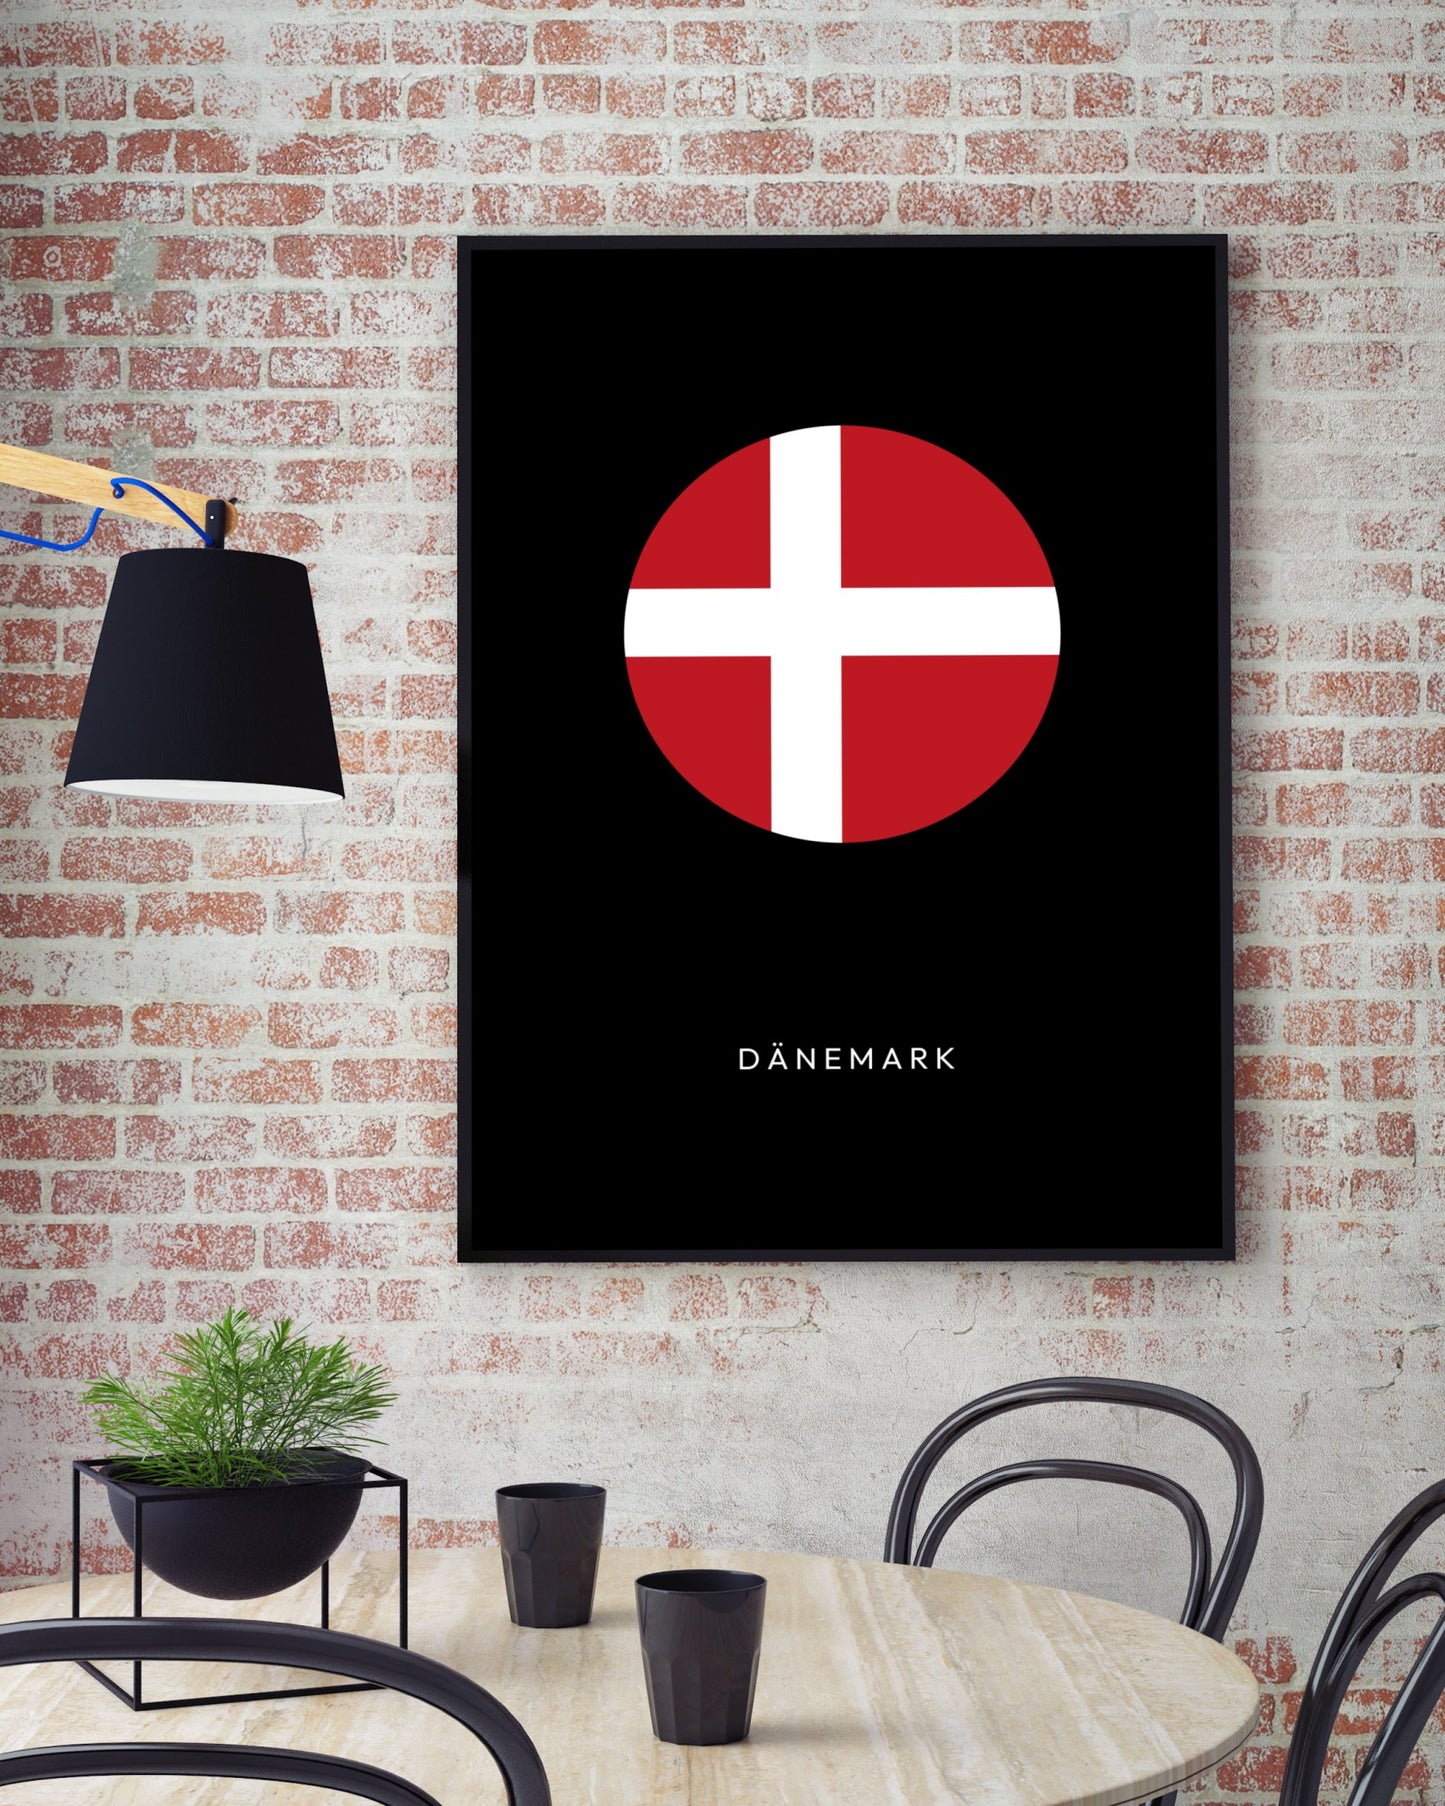 Poster Dänemark Kreis